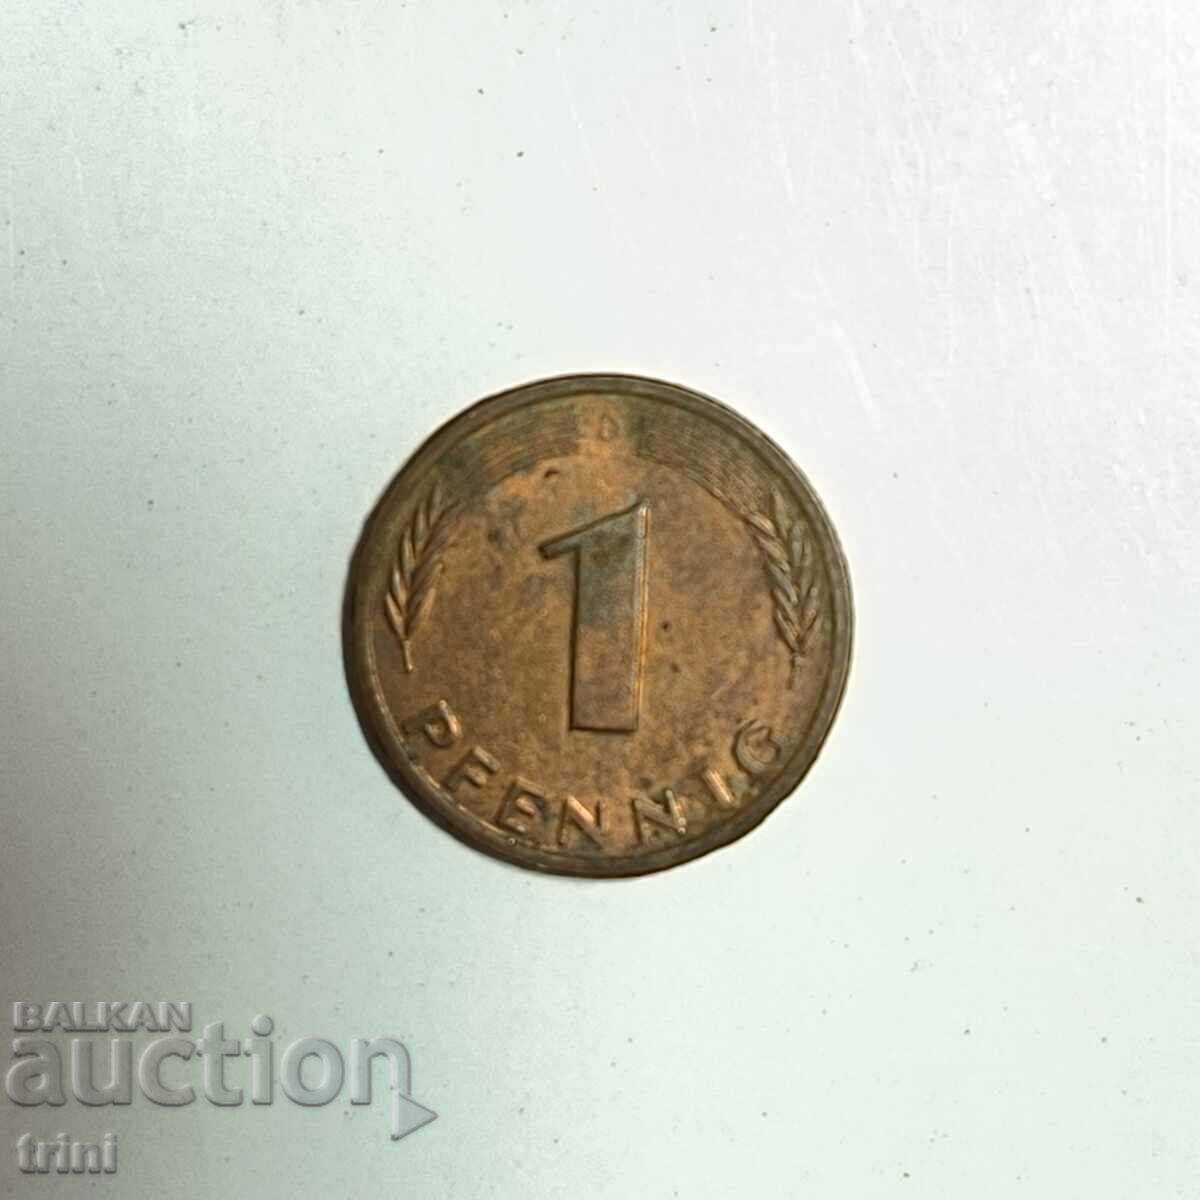 Germany 1 pfennig 1986 year 'D' - Munich e186